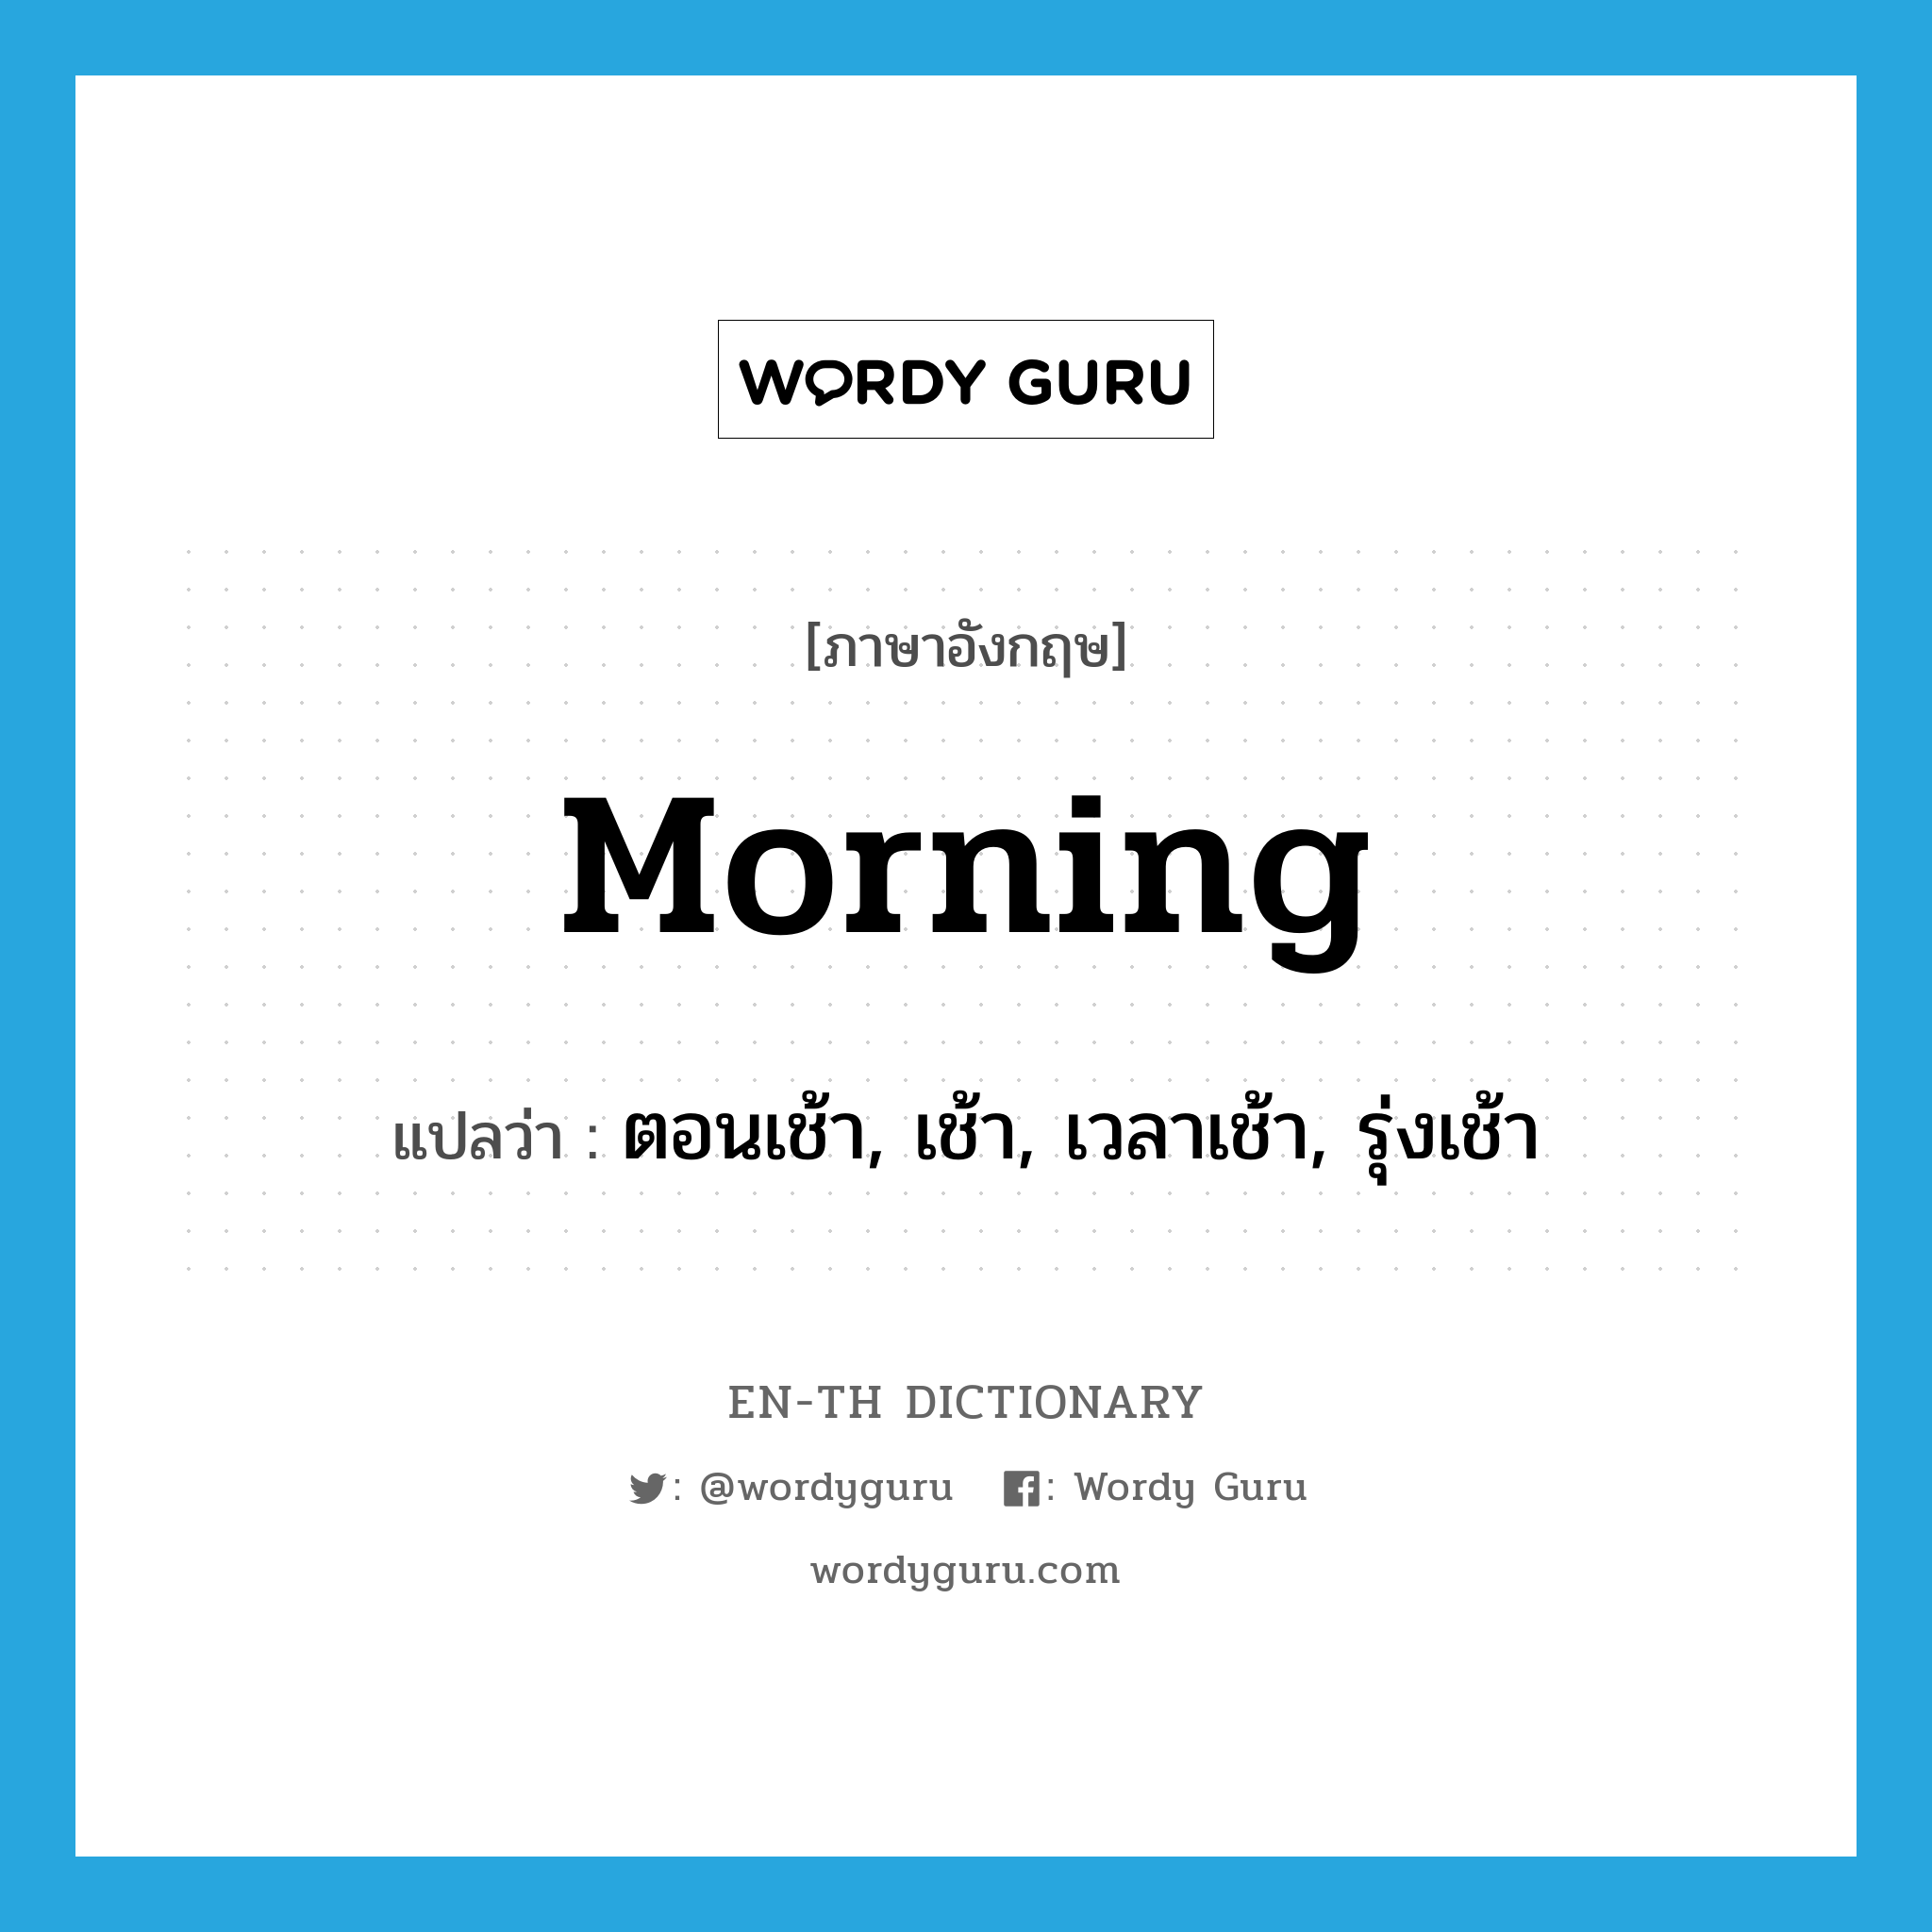 ตอนเช้า, เช้า, เวลาเช้า, รุ่งเช้า ภาษาอังกฤษ?, คำศัพท์ภาษาอังกฤษ ตอนเช้า, เช้า, เวลาเช้า, รุ่งเช้า แปลว่า morning ประเภท N หมวด N